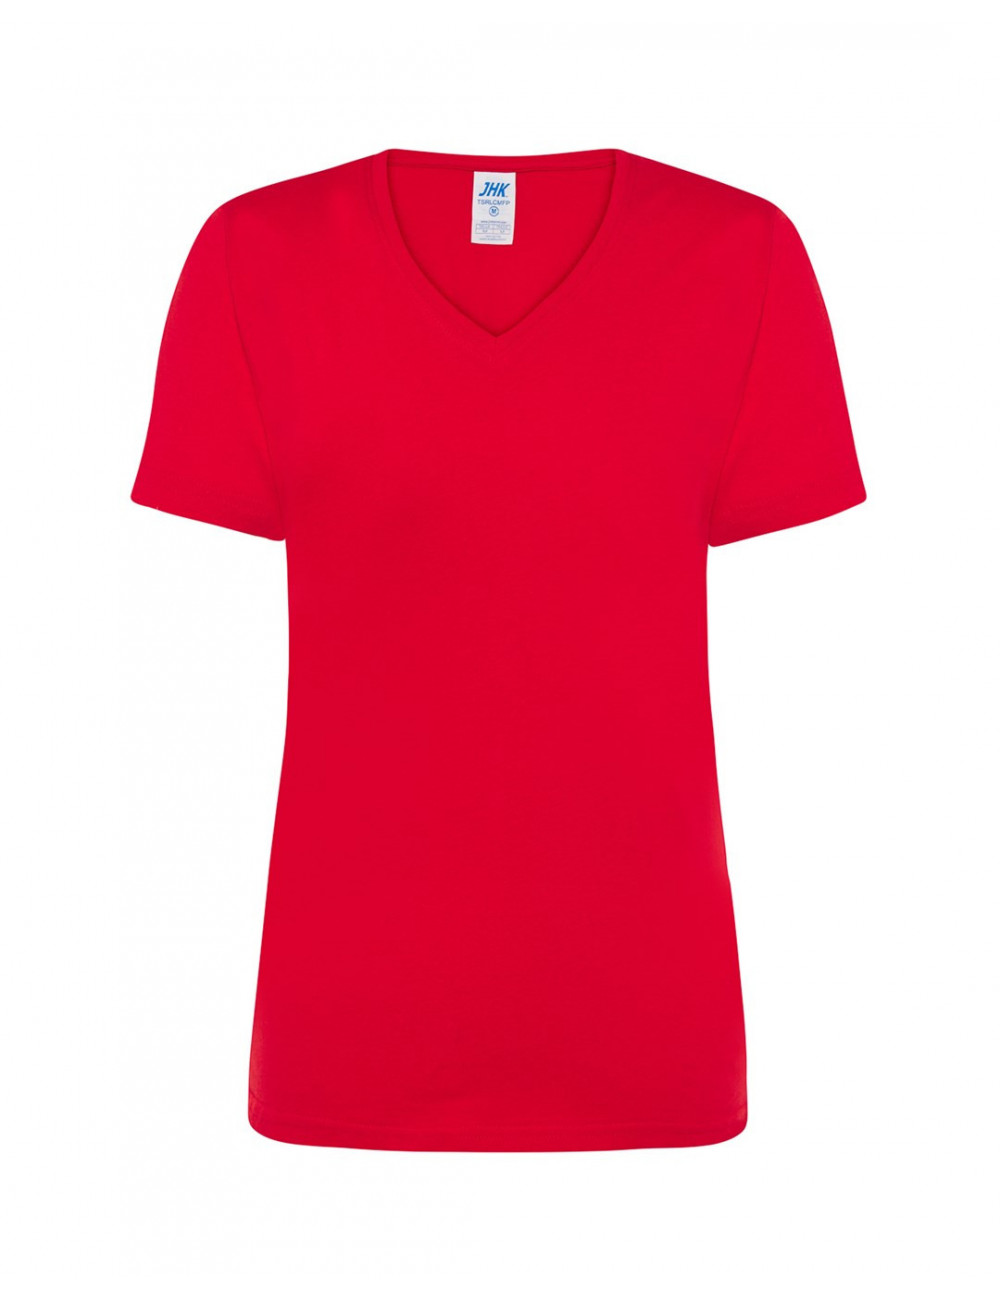 Koszulka damska tsrl cmfp lady comfort v-neck czerwony Jhk